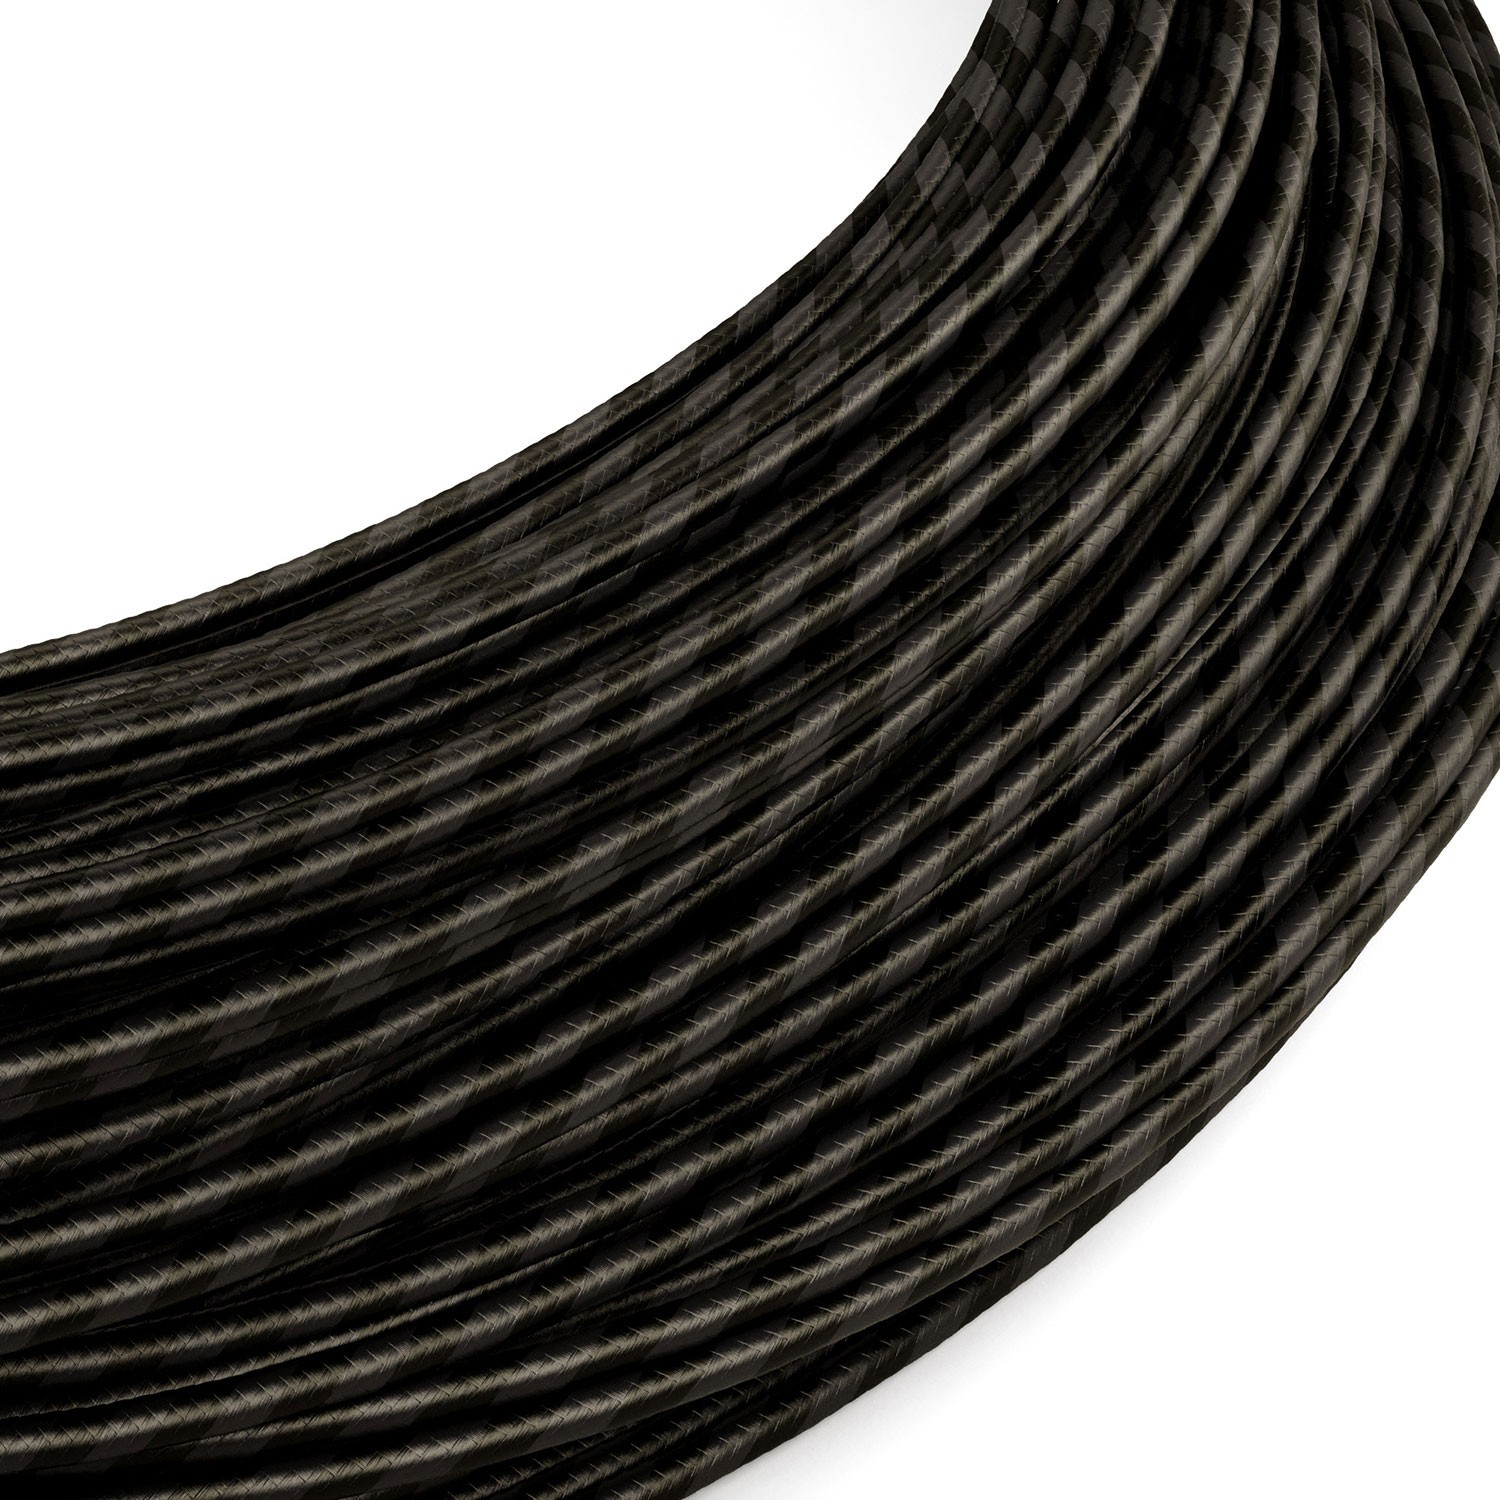 Cable de alimentación Extra Low Voltage revestido de tejido grafito y negro Vertigo ERM54 - 50 m